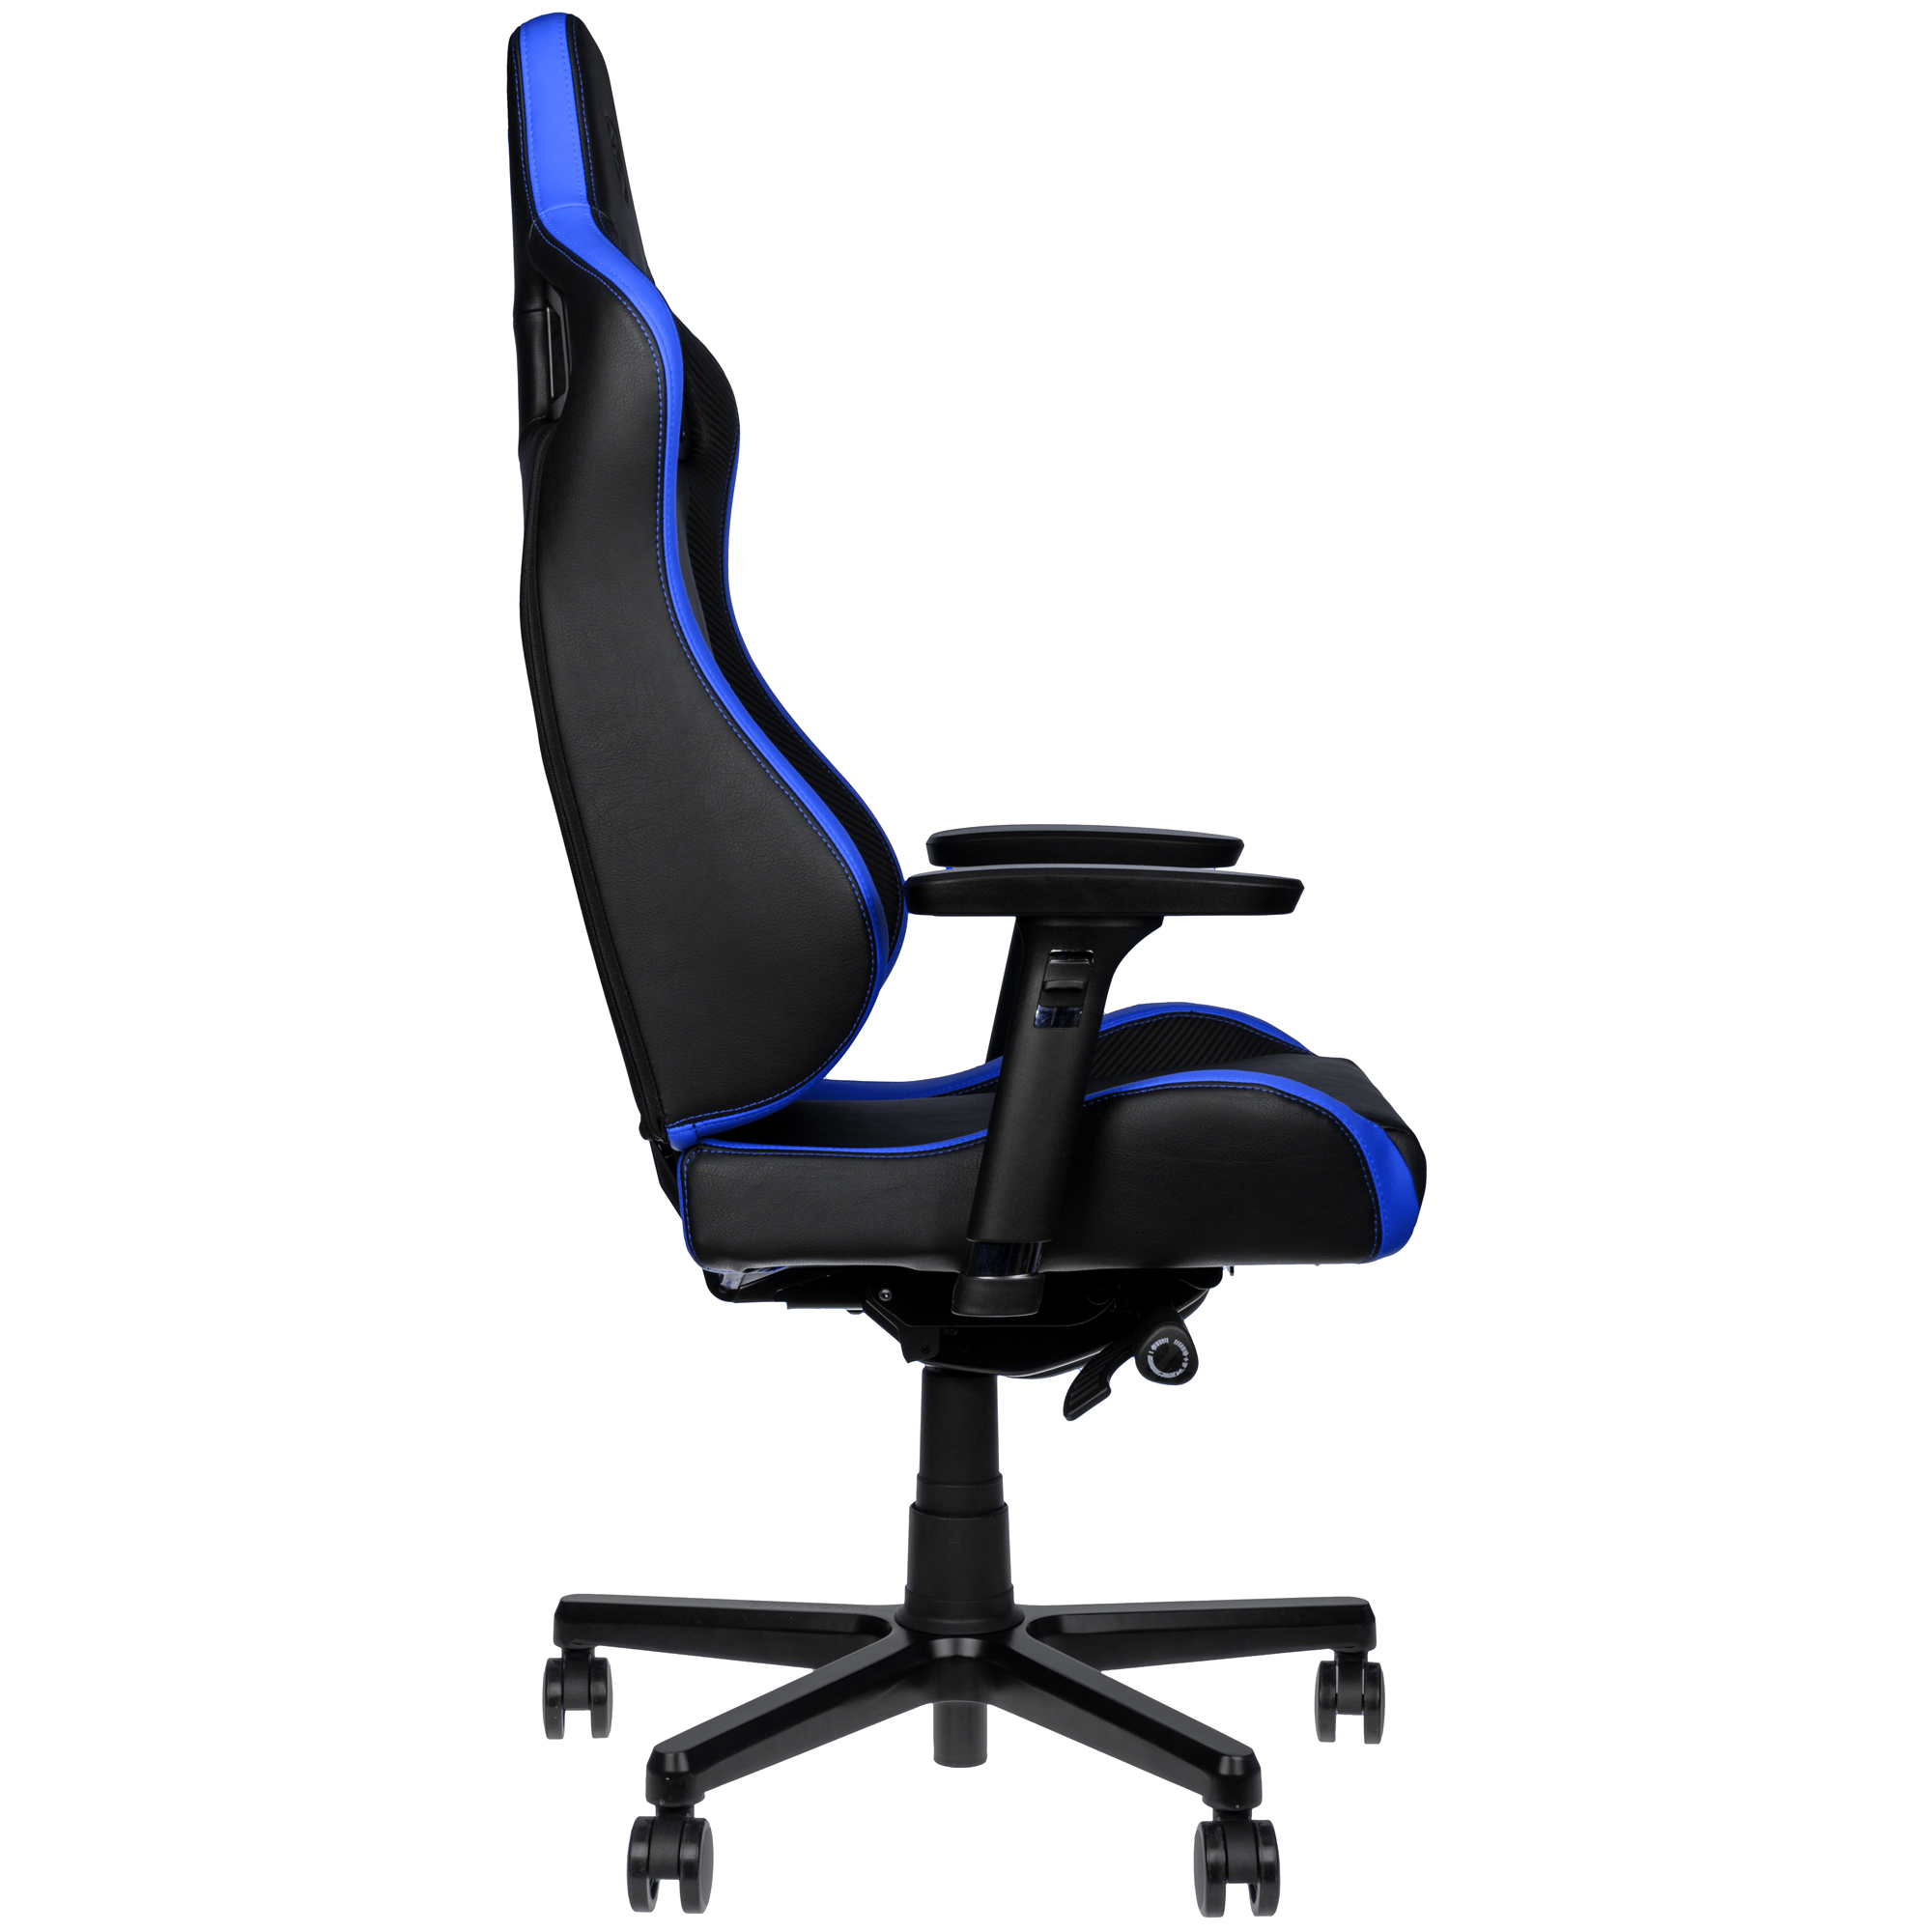 Gamer szék noblechairs EPIC Compact Fekete/Carbon/Kék